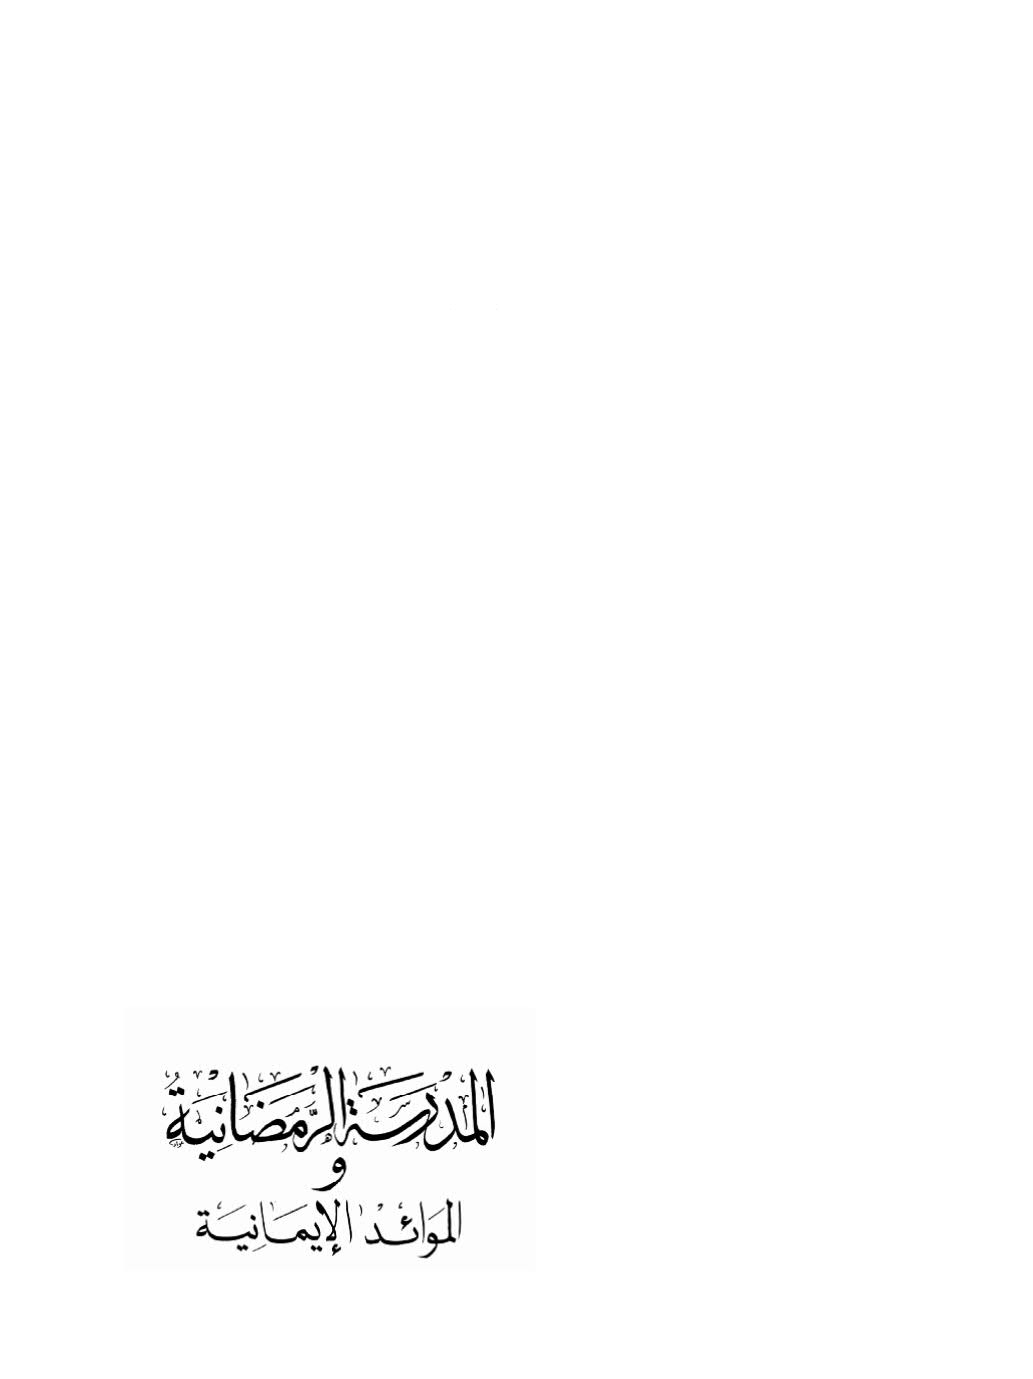 المدرسة الرمضانية والموائد الإيمانية -أبو بكر الهدار ( الطبعة الثالثة _ 2011م )